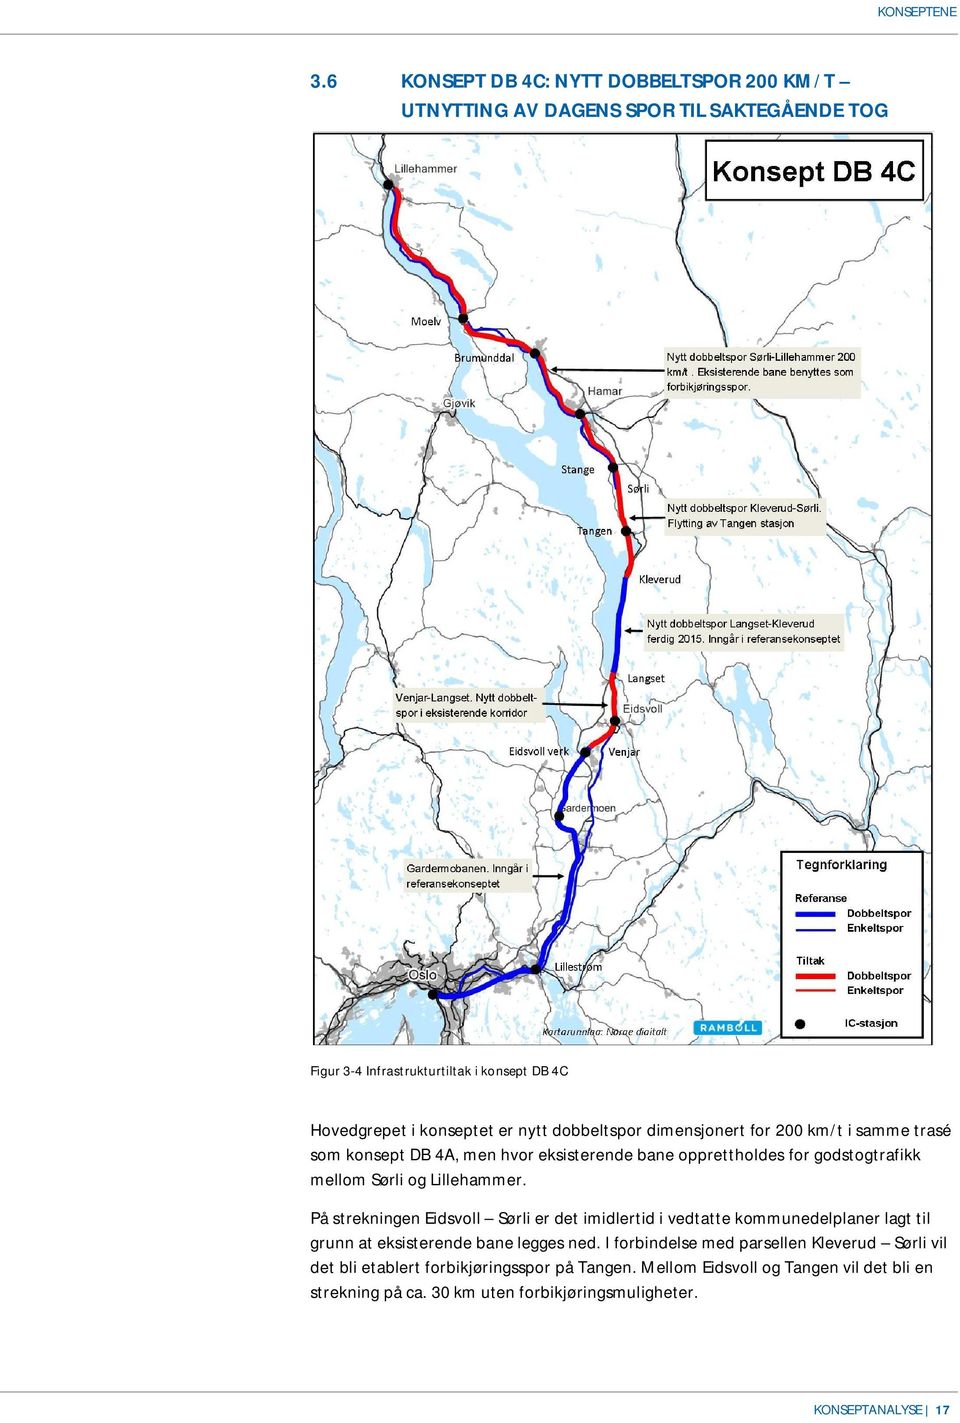 dobbeltspor dimensjonert for 200 km/t i samme trasé som konsept DB 4A, men hvor eksisterende bane opprettholdes for godstogtrafikk mellom Sørli og Lillehammer.